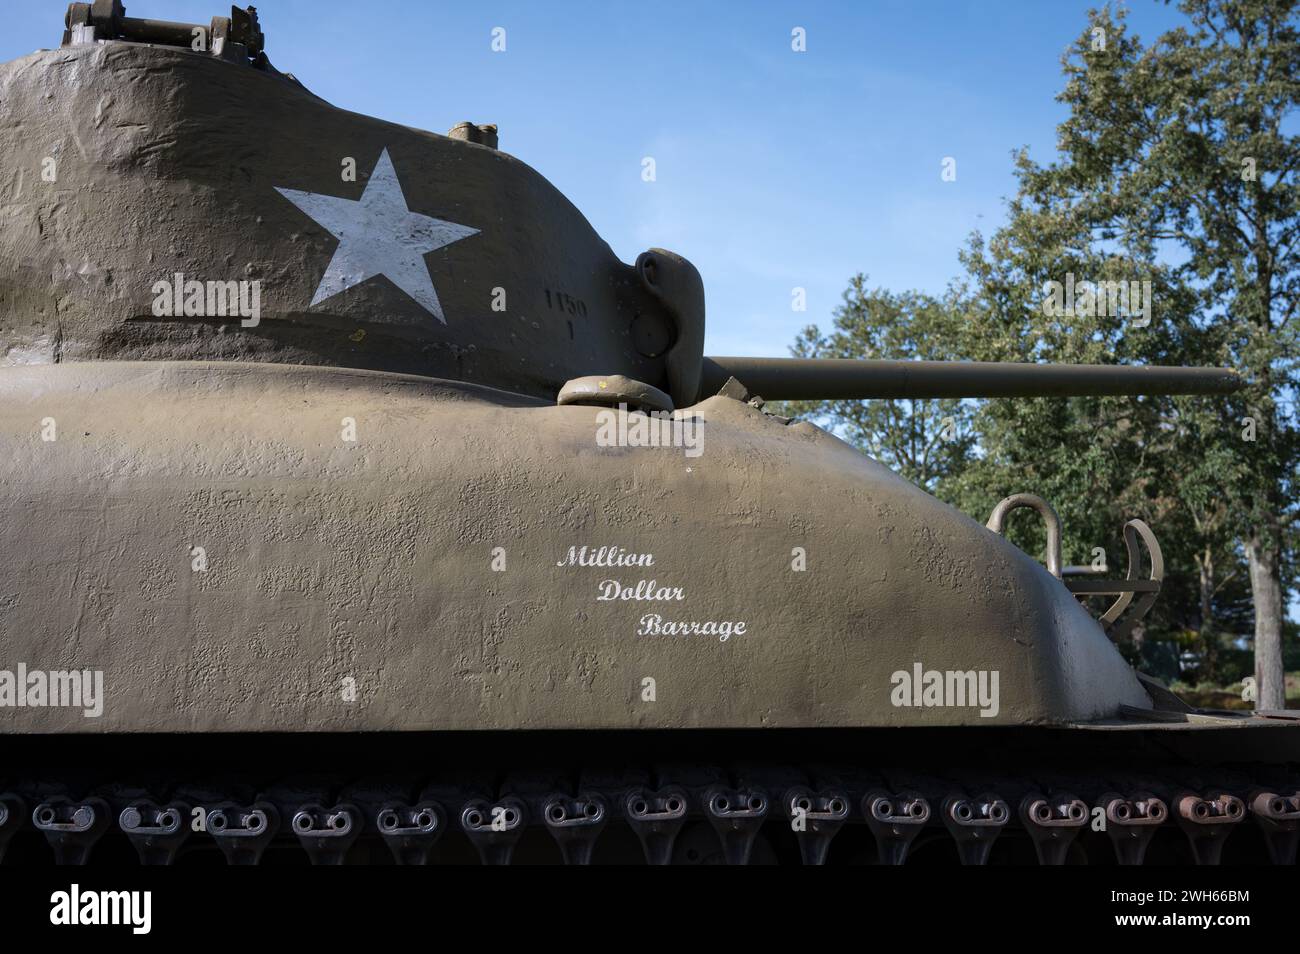 Die Million Dollar Barrage Inschrift auf einem amerikanischen M4 Sherman M4A1 Panzer aus dem Zweiten Weltkrieg in der Normandie Stockfoto